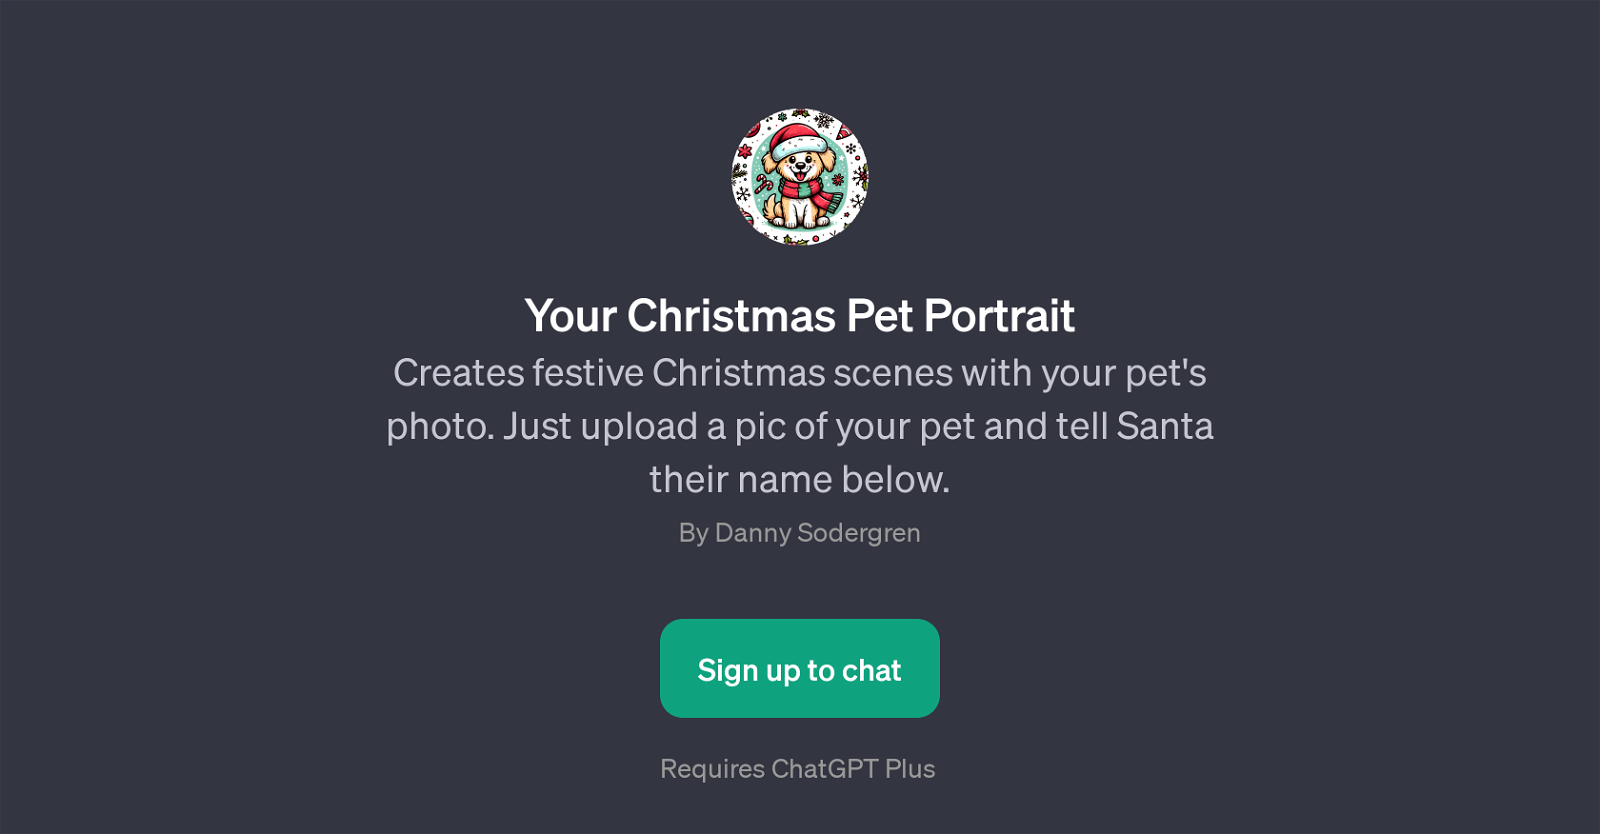 Your Christmas Pet Portrait website